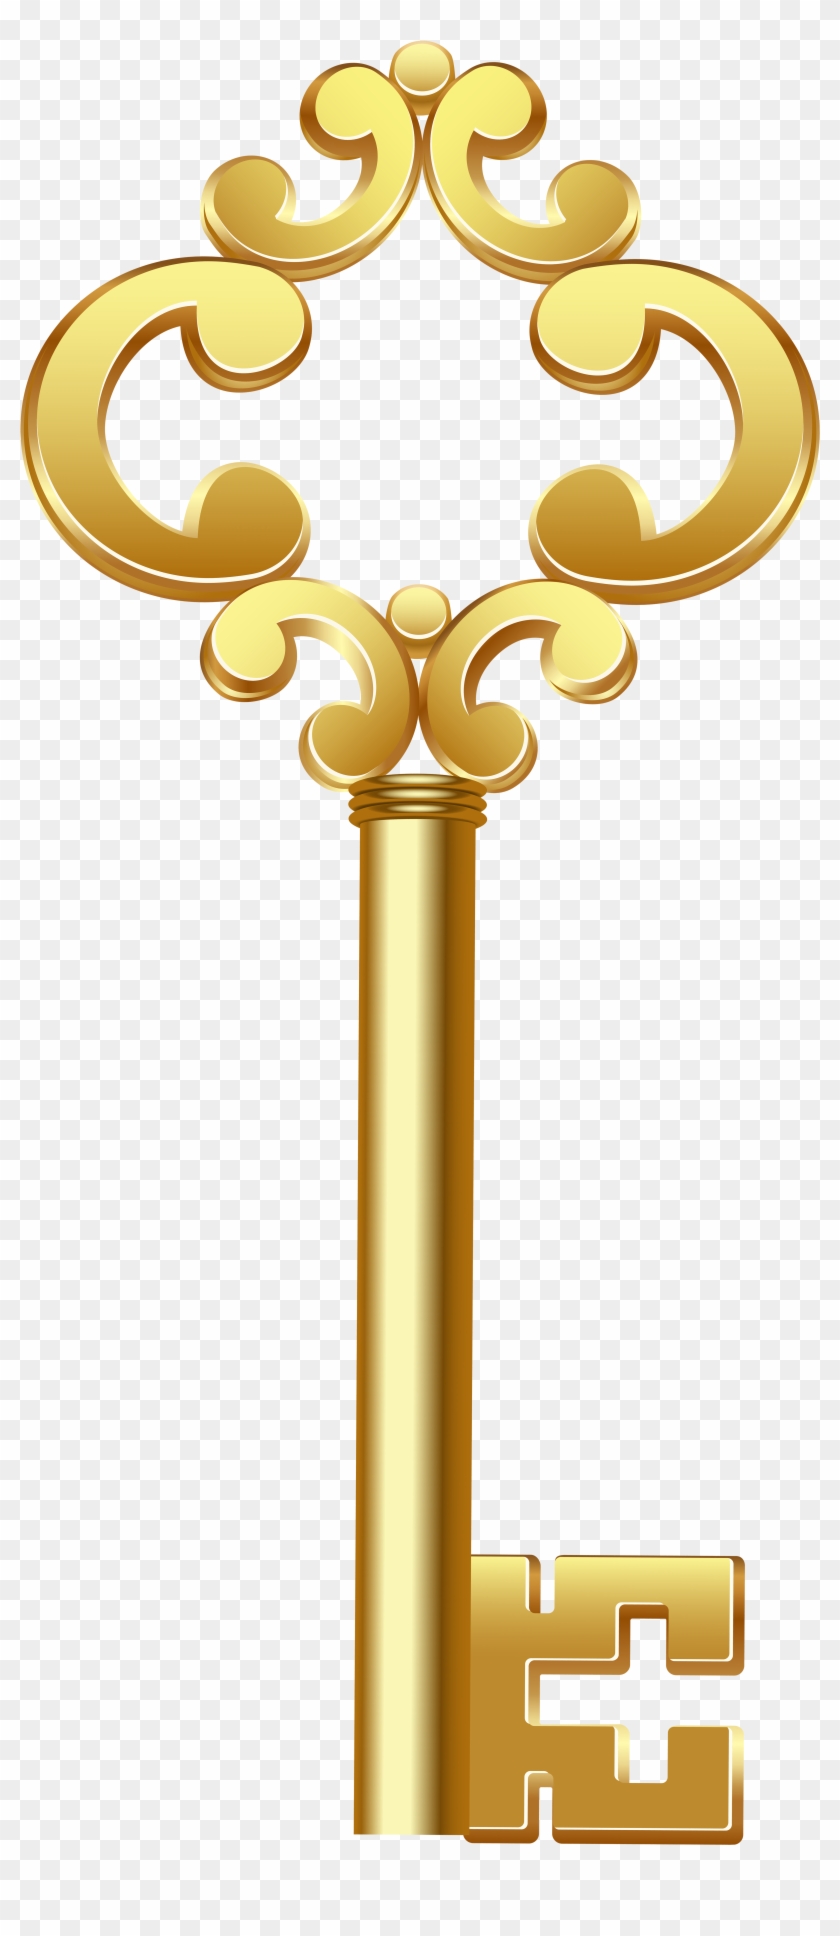 Gold Key Png Clip Art - Clip Art #282044